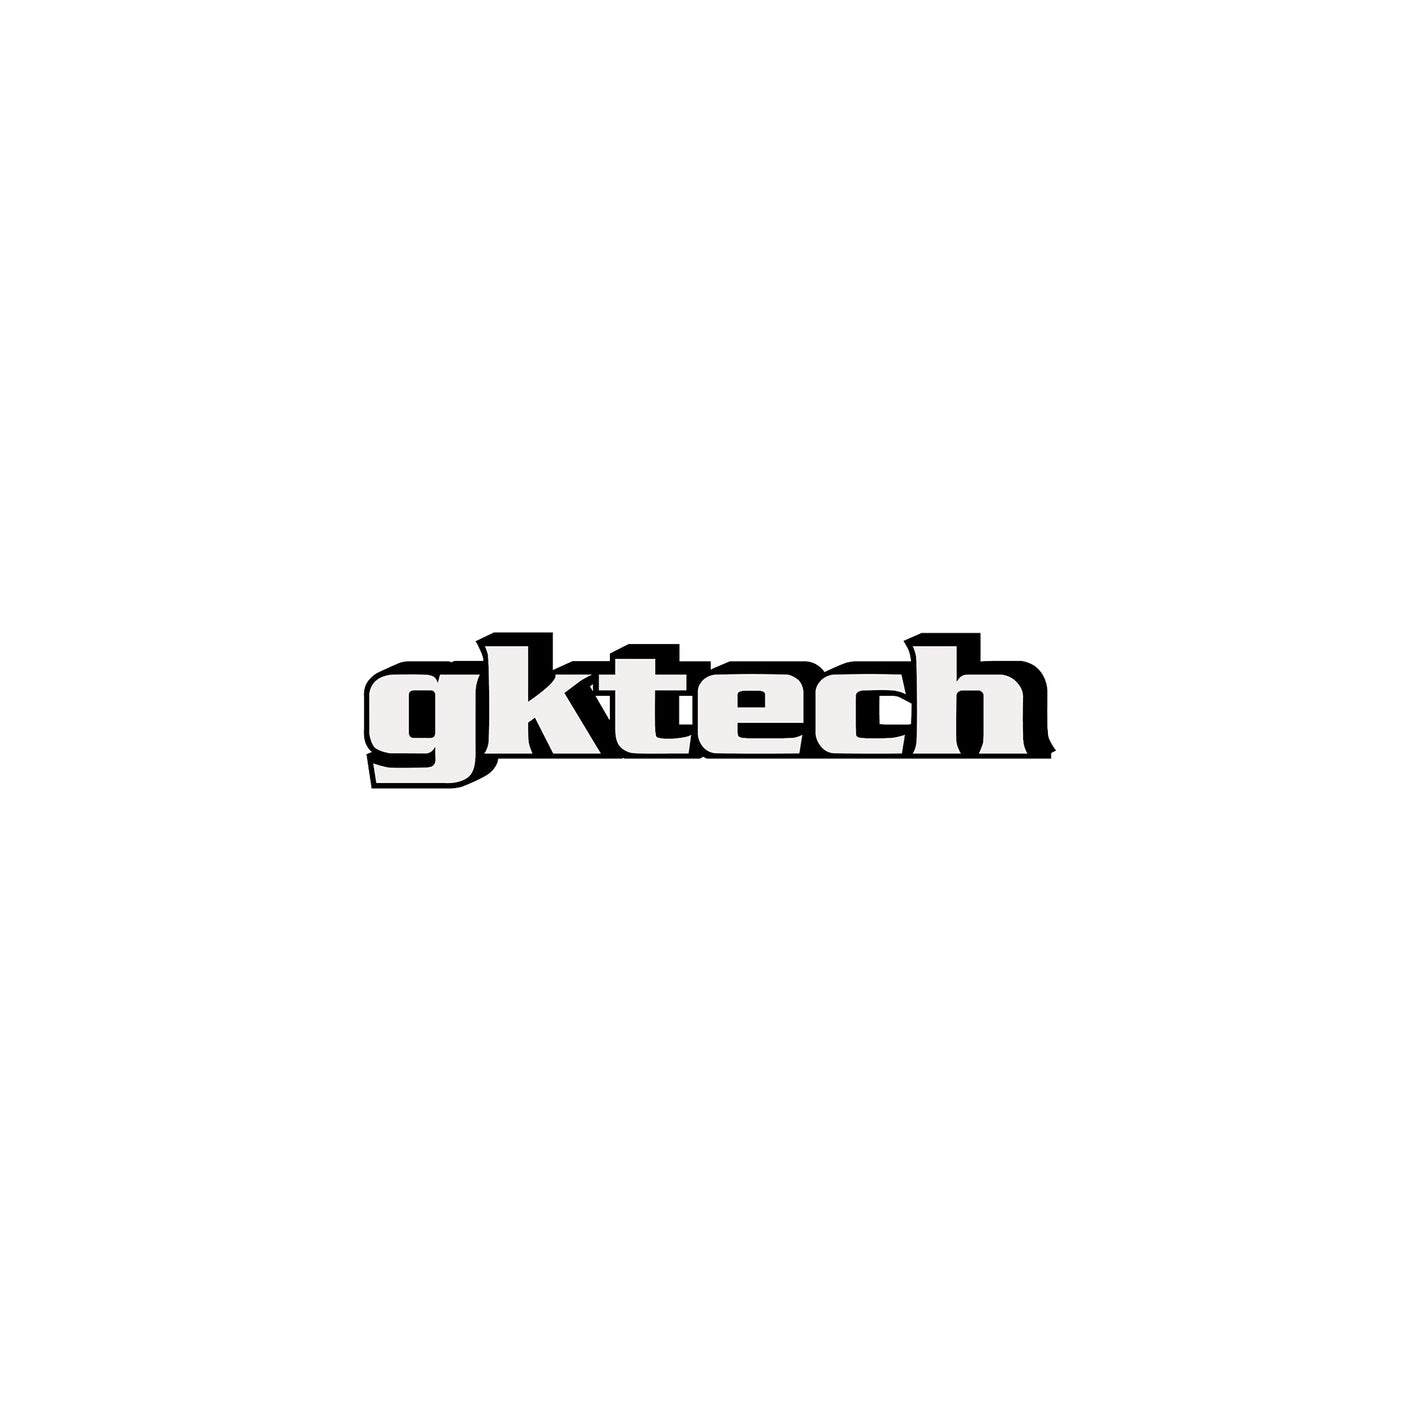 GKTech